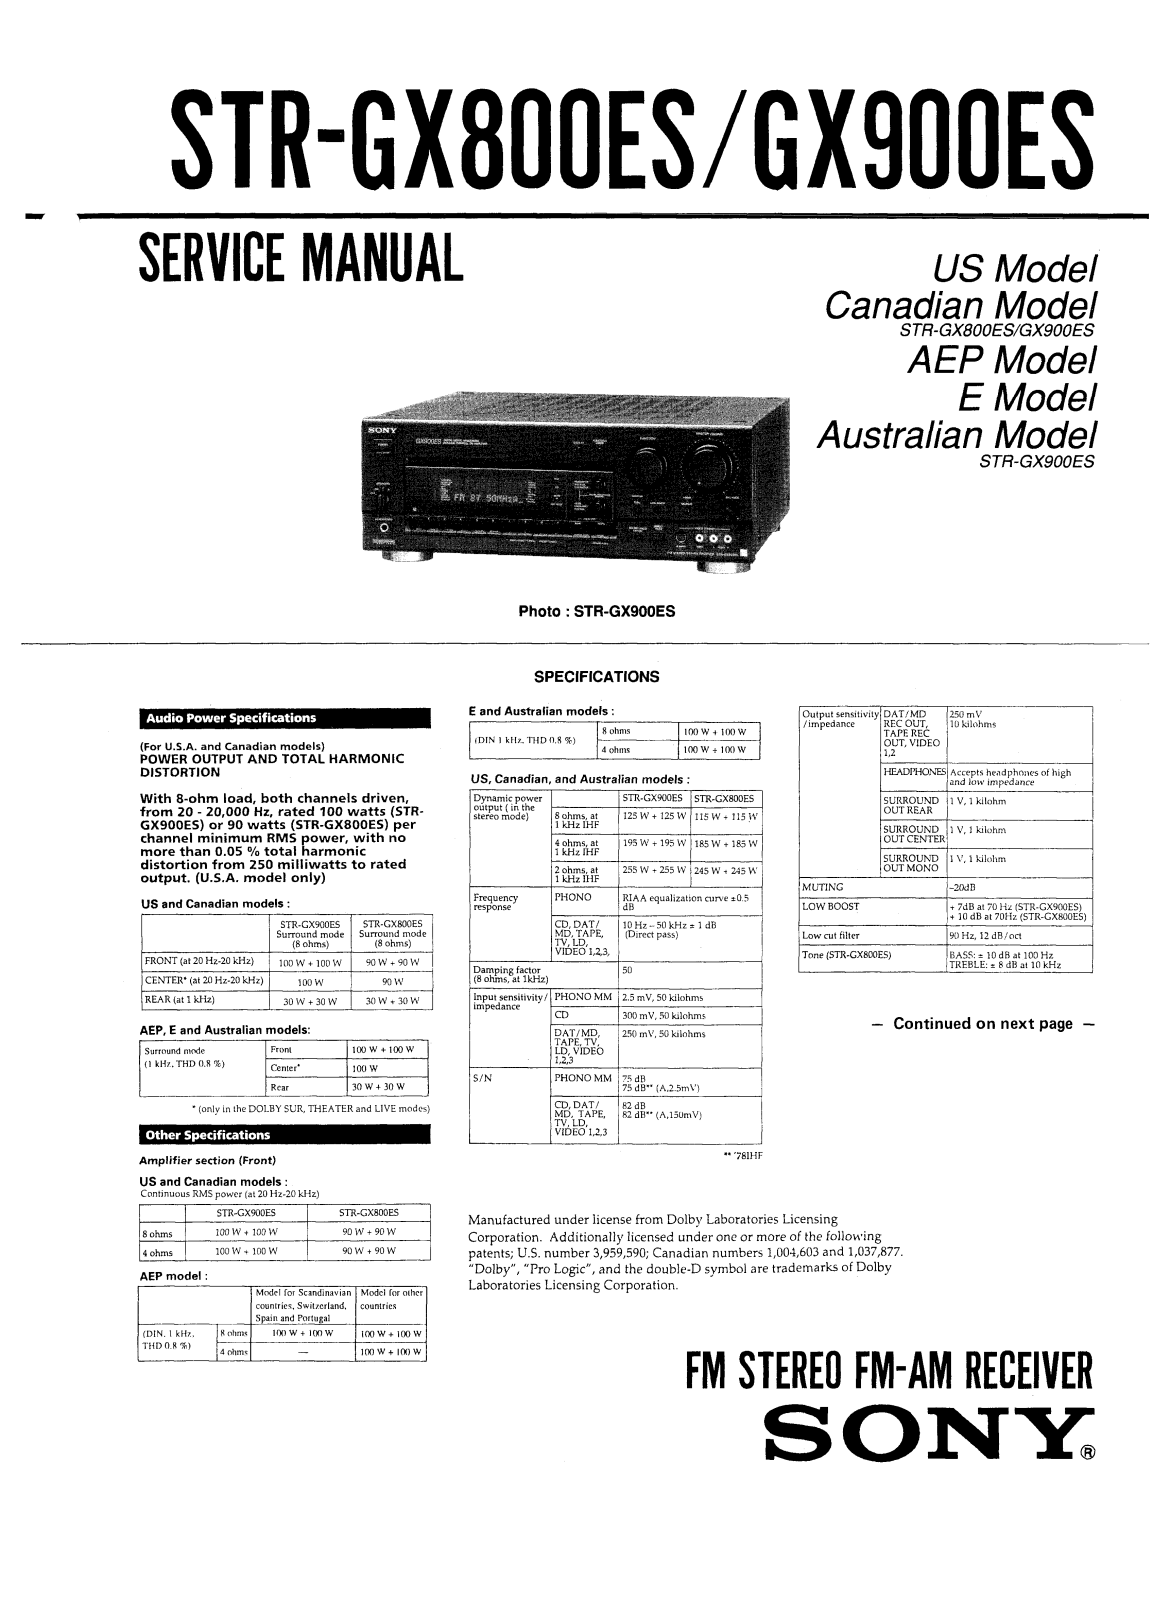 SONY STR-GX800ES, STR-GX900ES SERVICE MANUAL